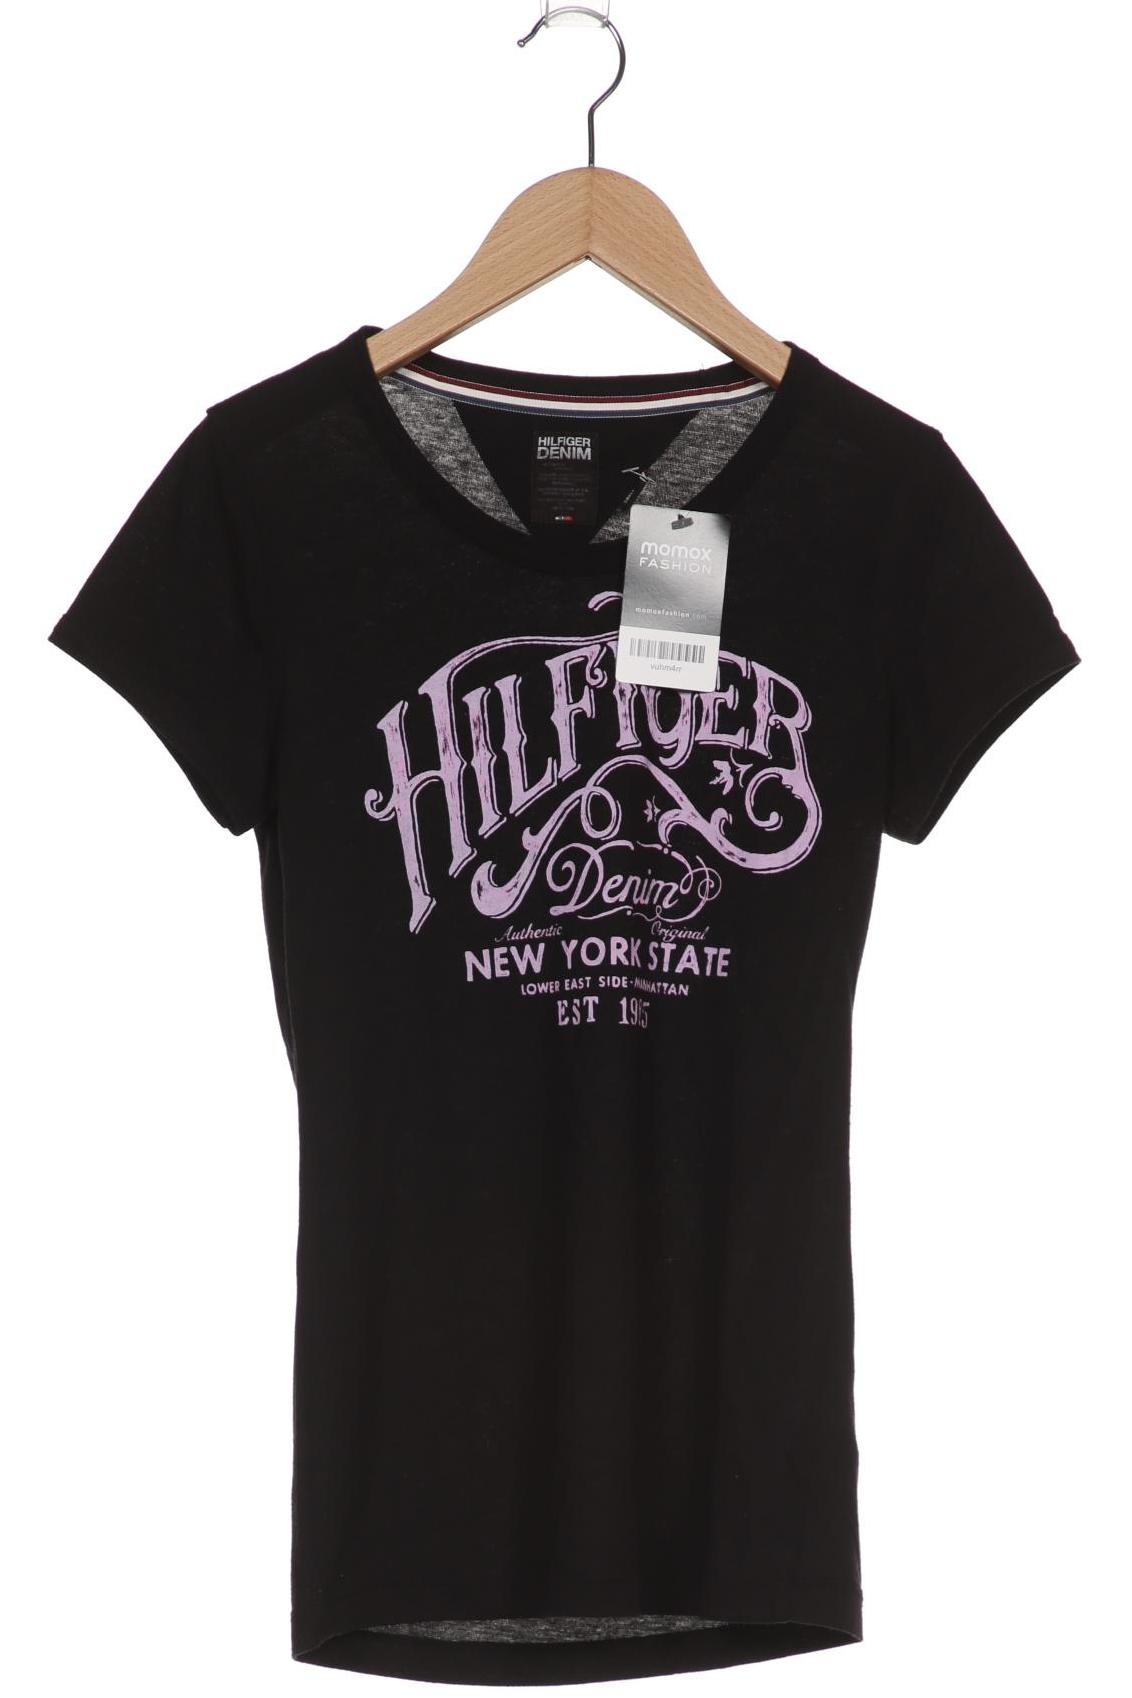 HILFIGER DENIM Damen T-Shirt, schwarz von Hilfiger Denim